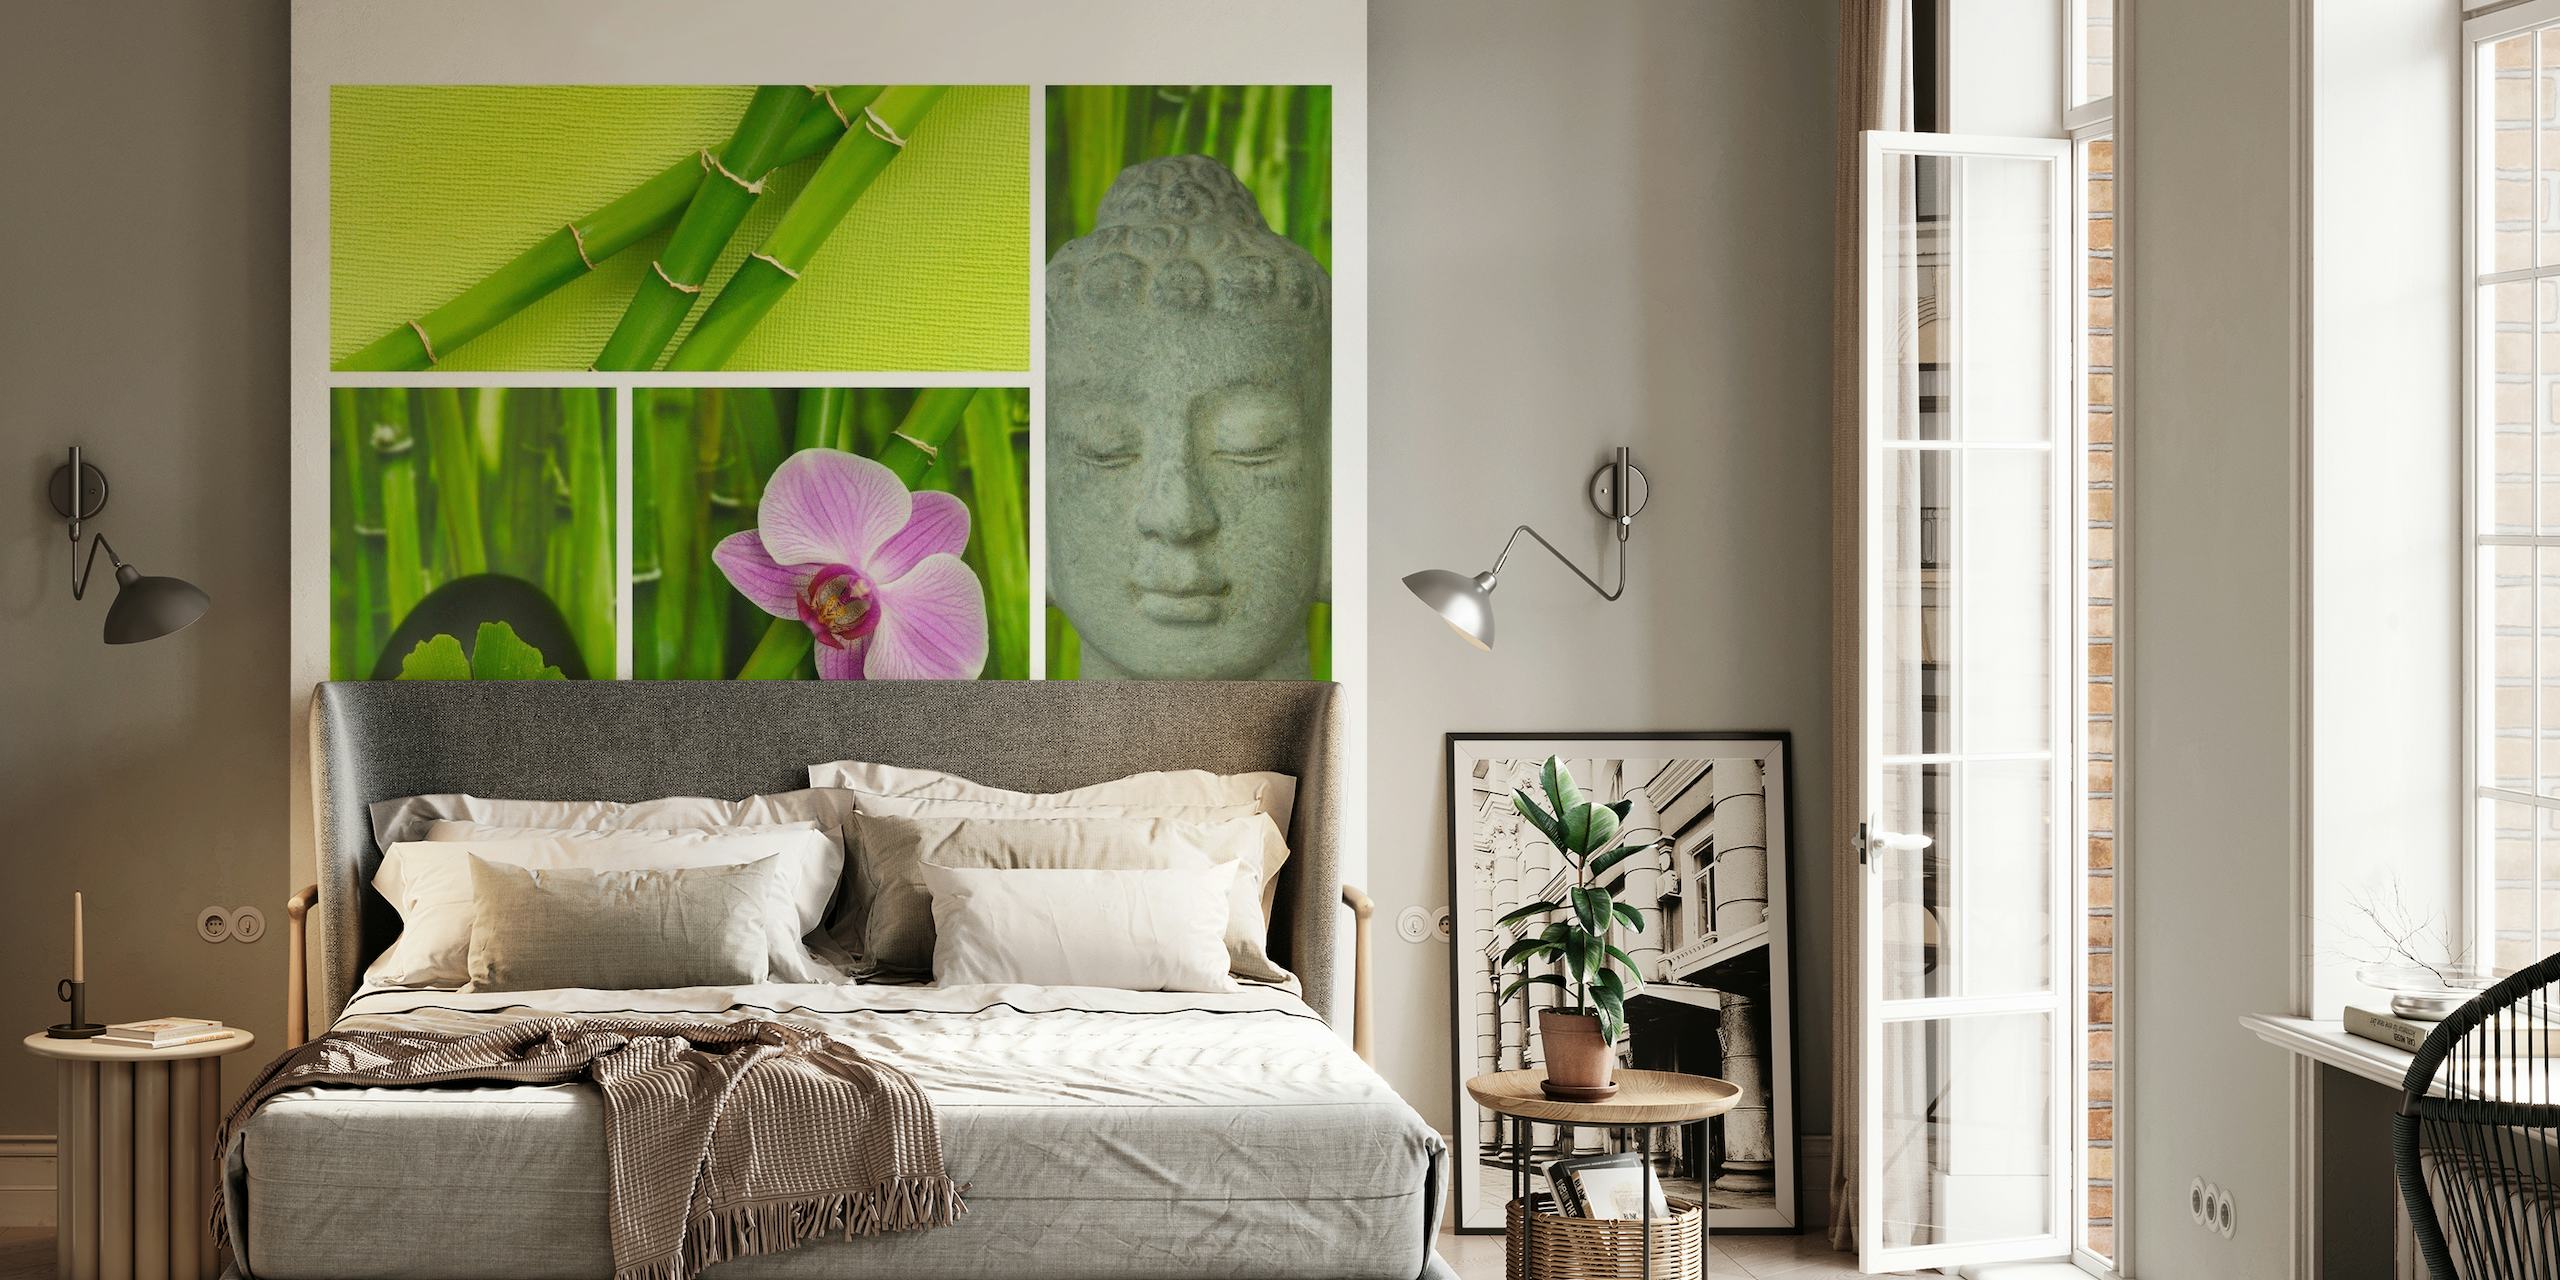 Carta da parati Relax Zen e Buddha con bambù, orchidea, volto di Buddha e scritta "Relax".